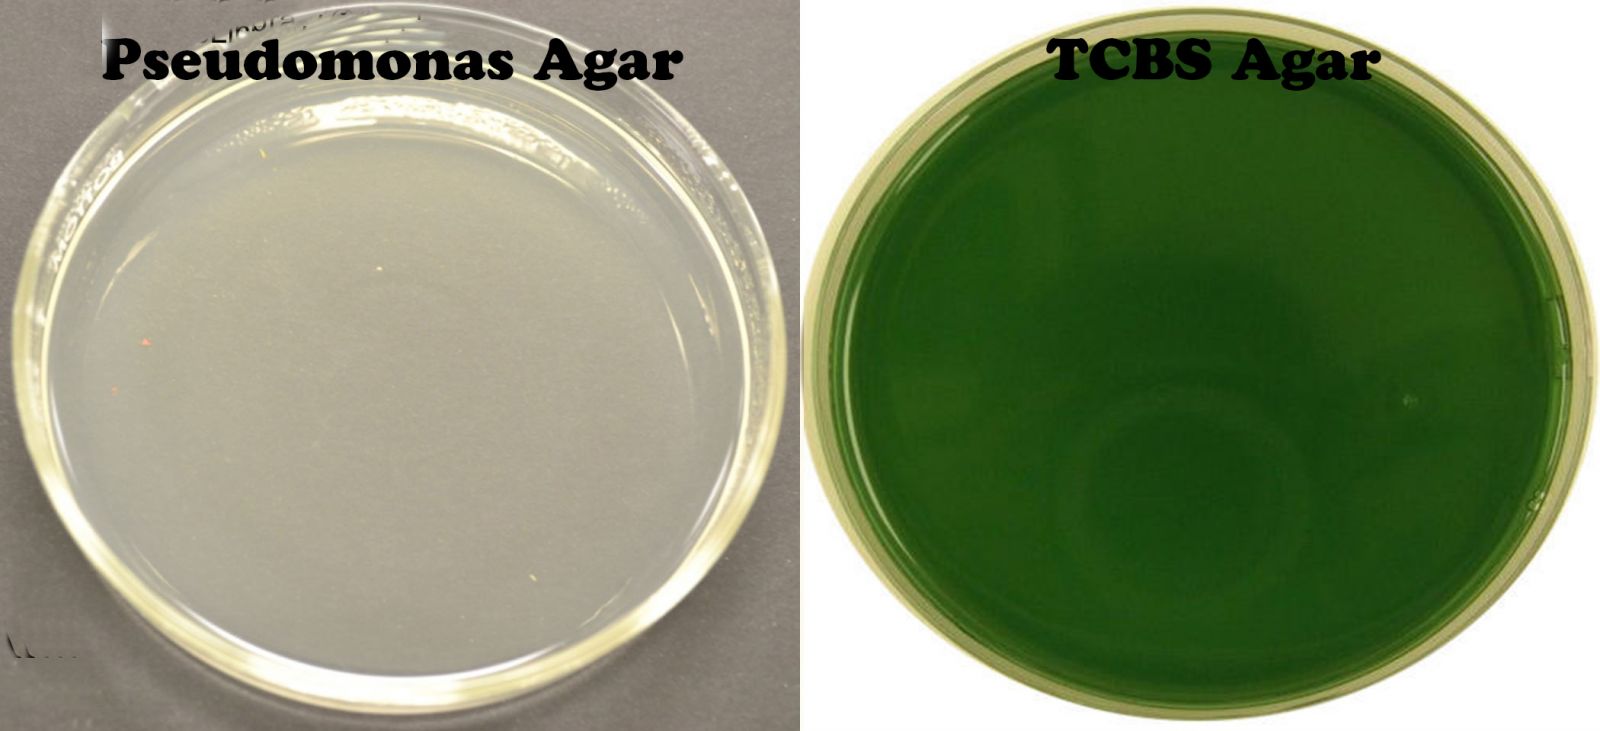 bệnh tôm, bệnh do vibrio, kiểm soát vibrio trên tôm, acid hữu cơ, sử dụng acid hữu cơ trên tôm